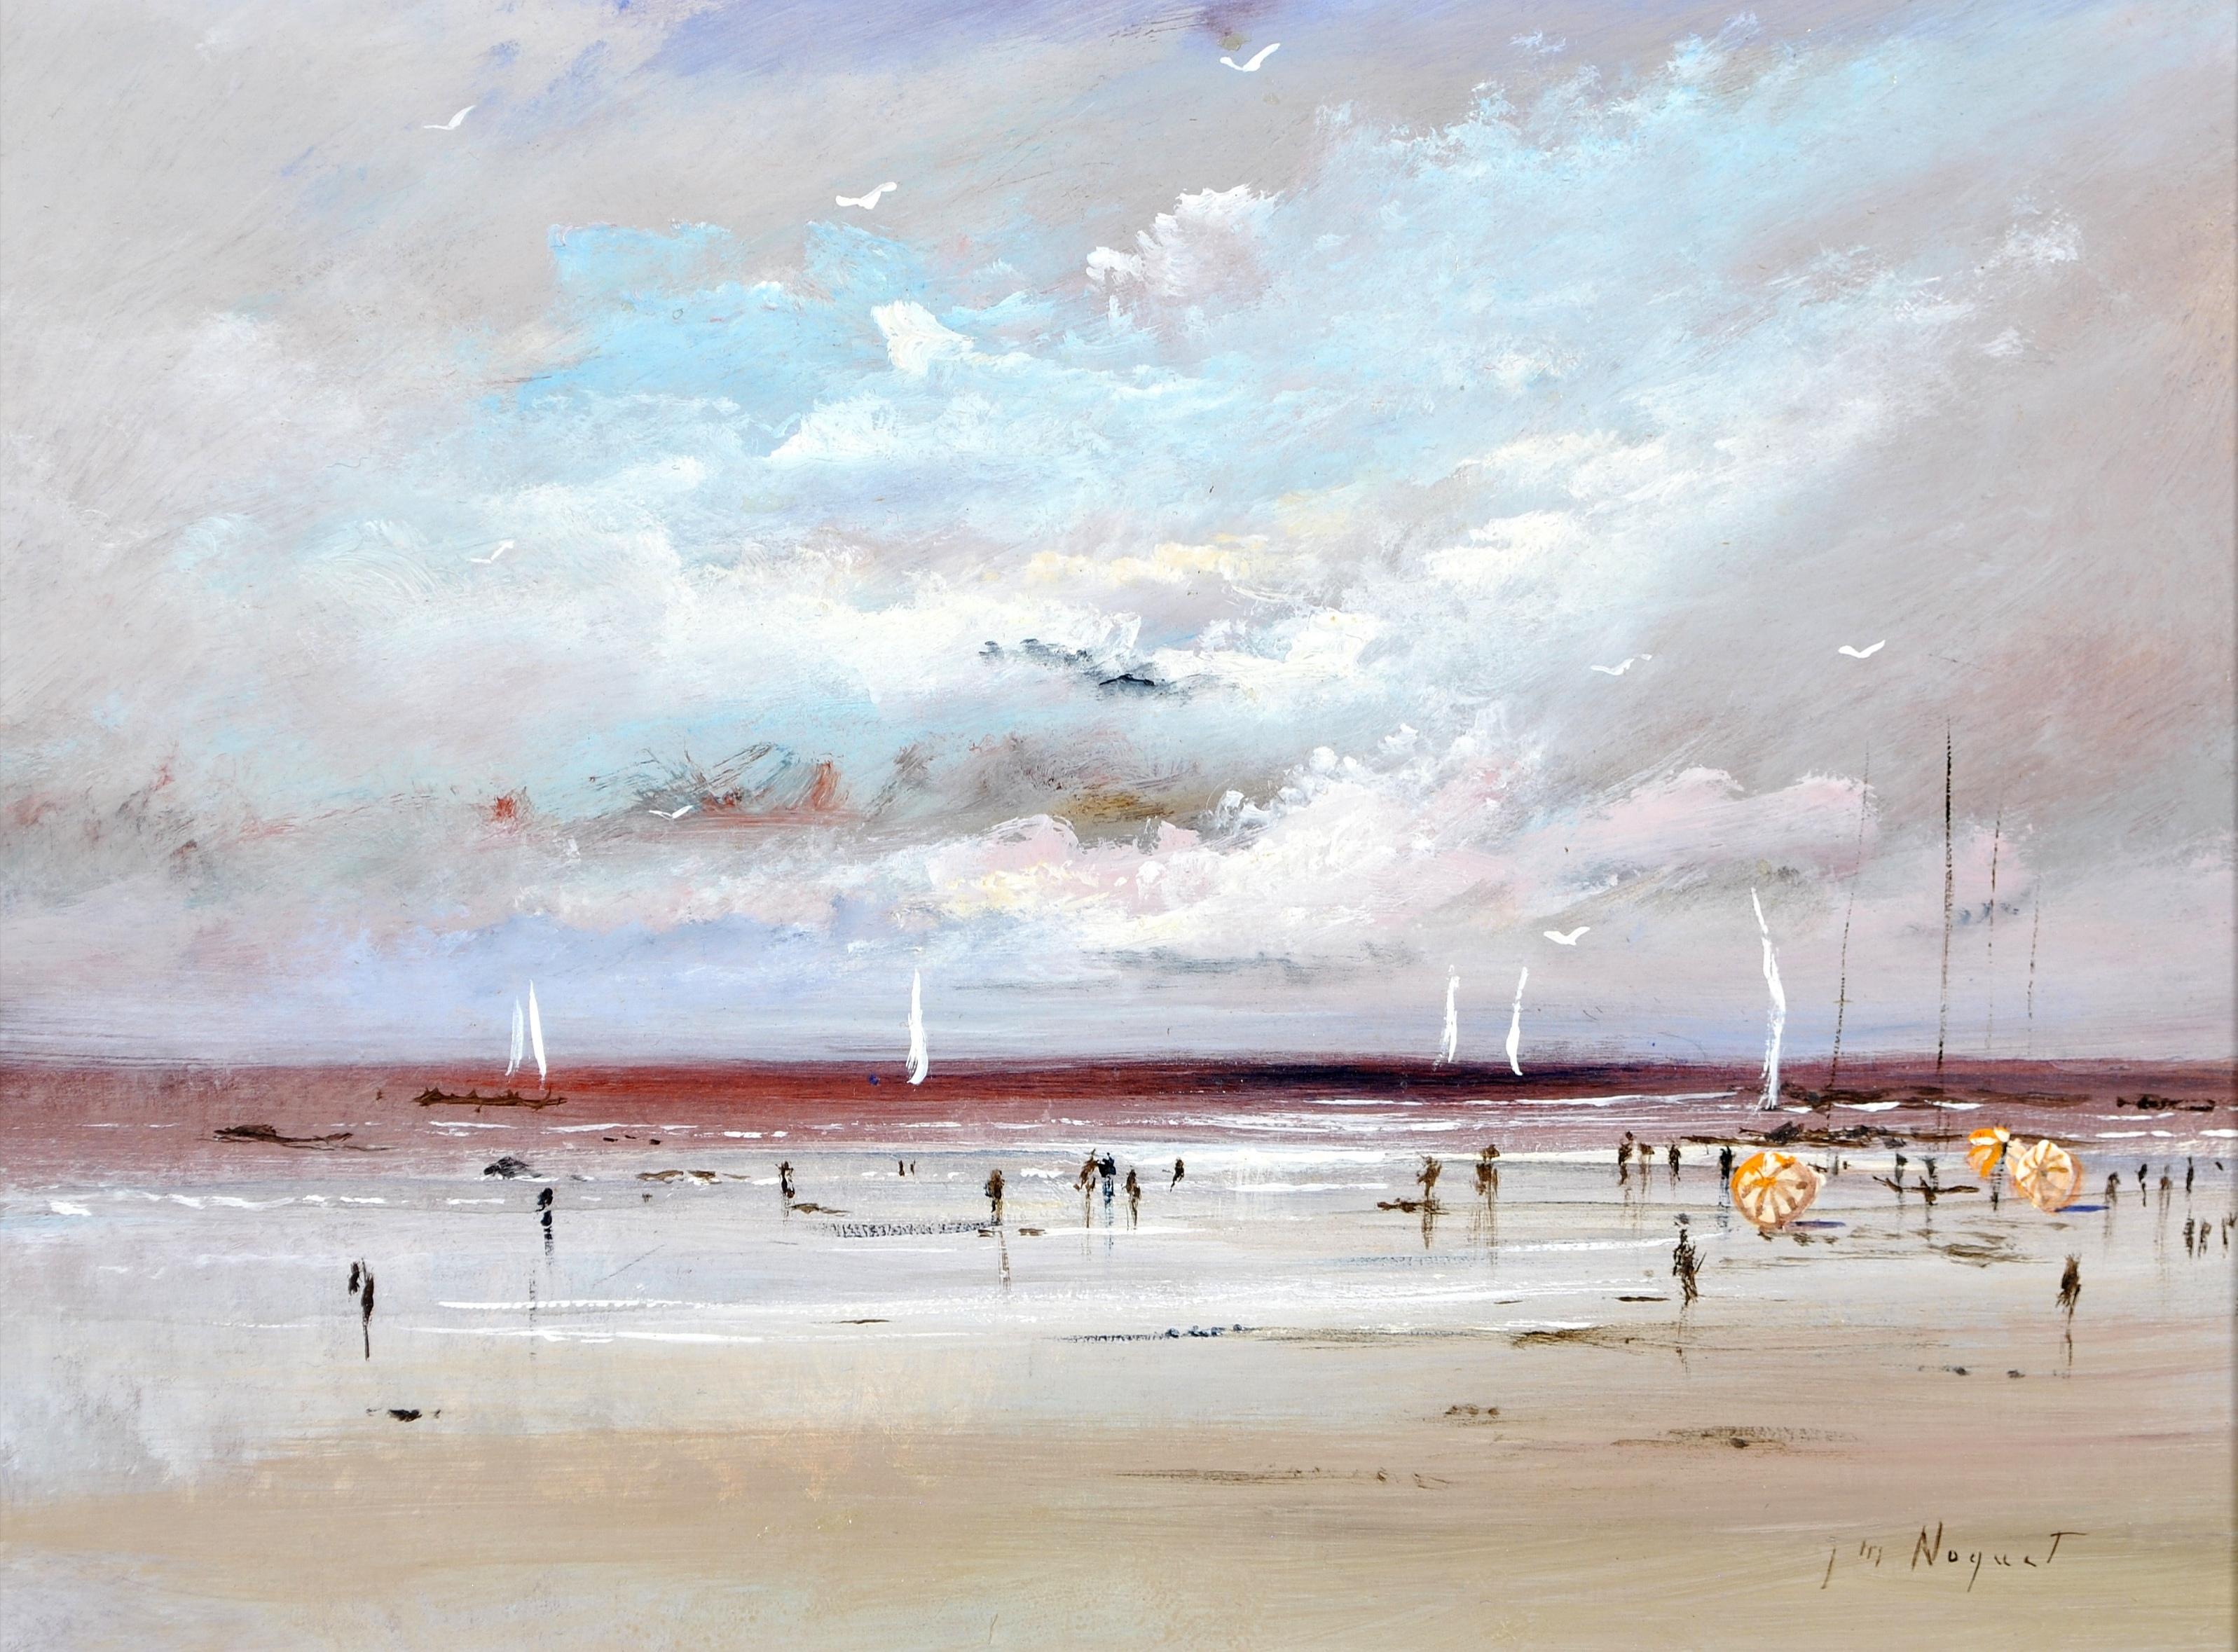 Figures sur la plage - Peinture impressionniste française du milieu du 20e siècle - Impressionnisme Painting par J. Nocquet